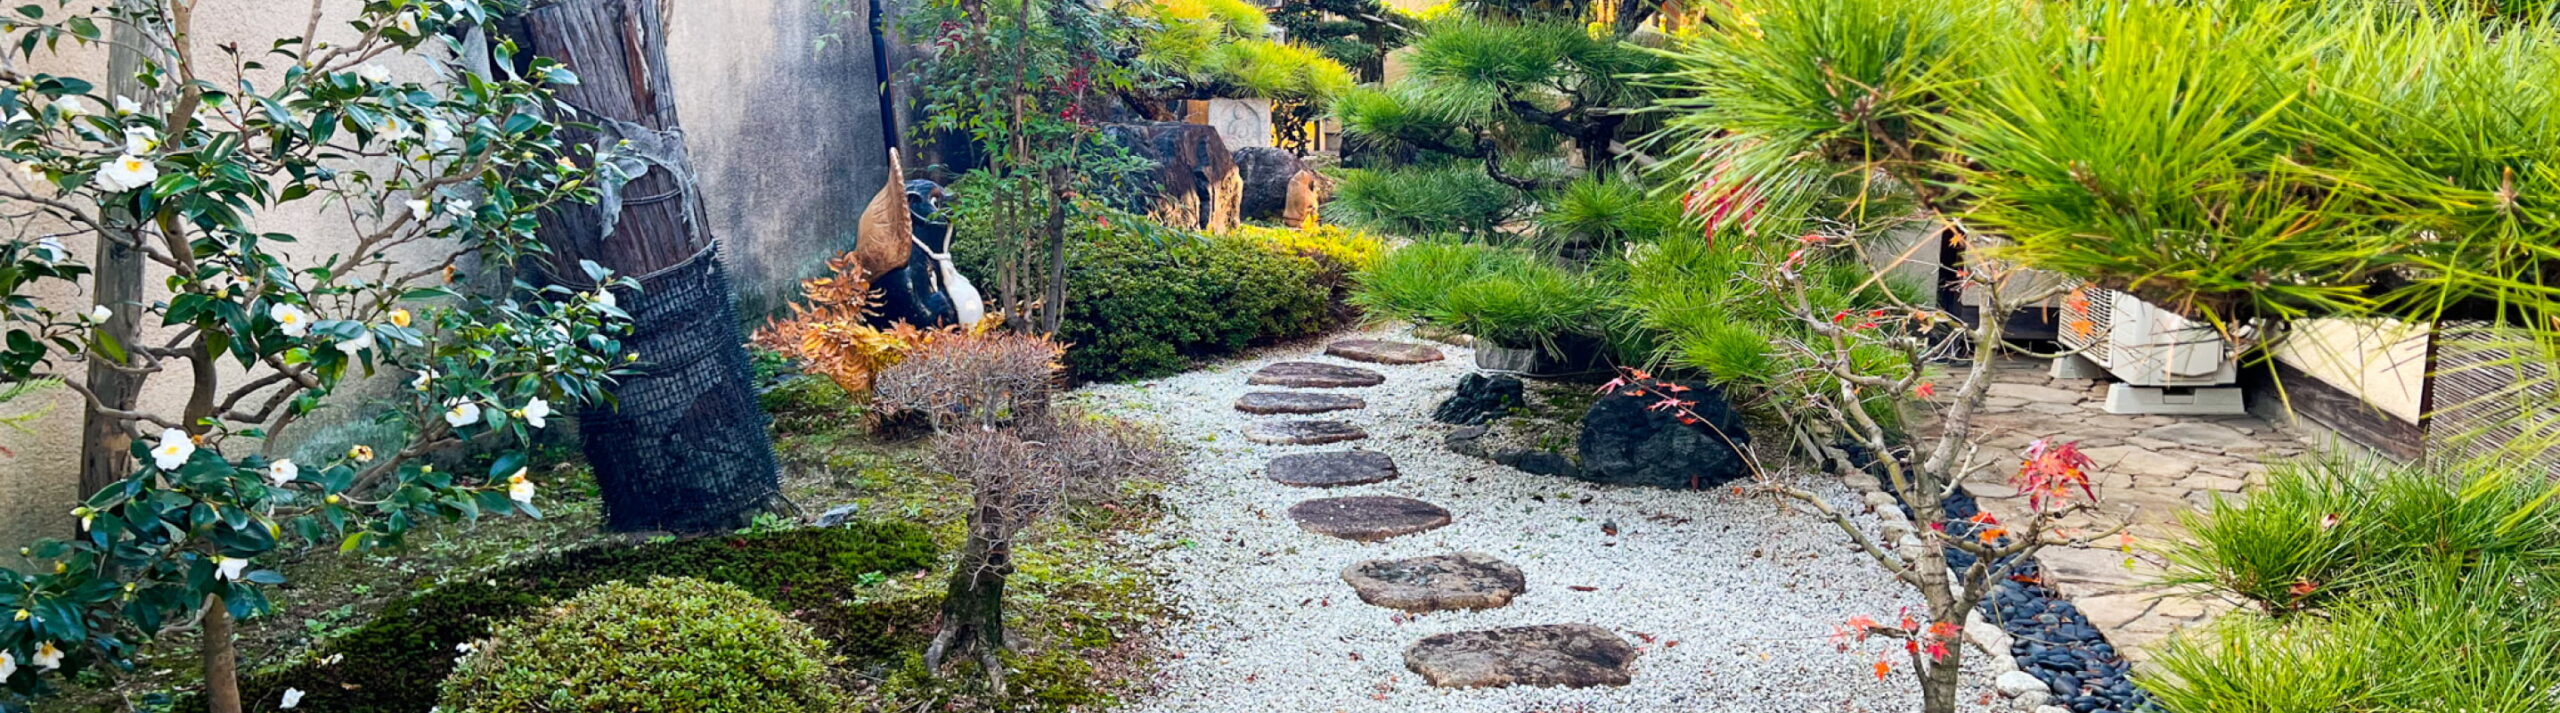 松が植えられ、飛び石の置かれた若冲庵クリニックの中庭。